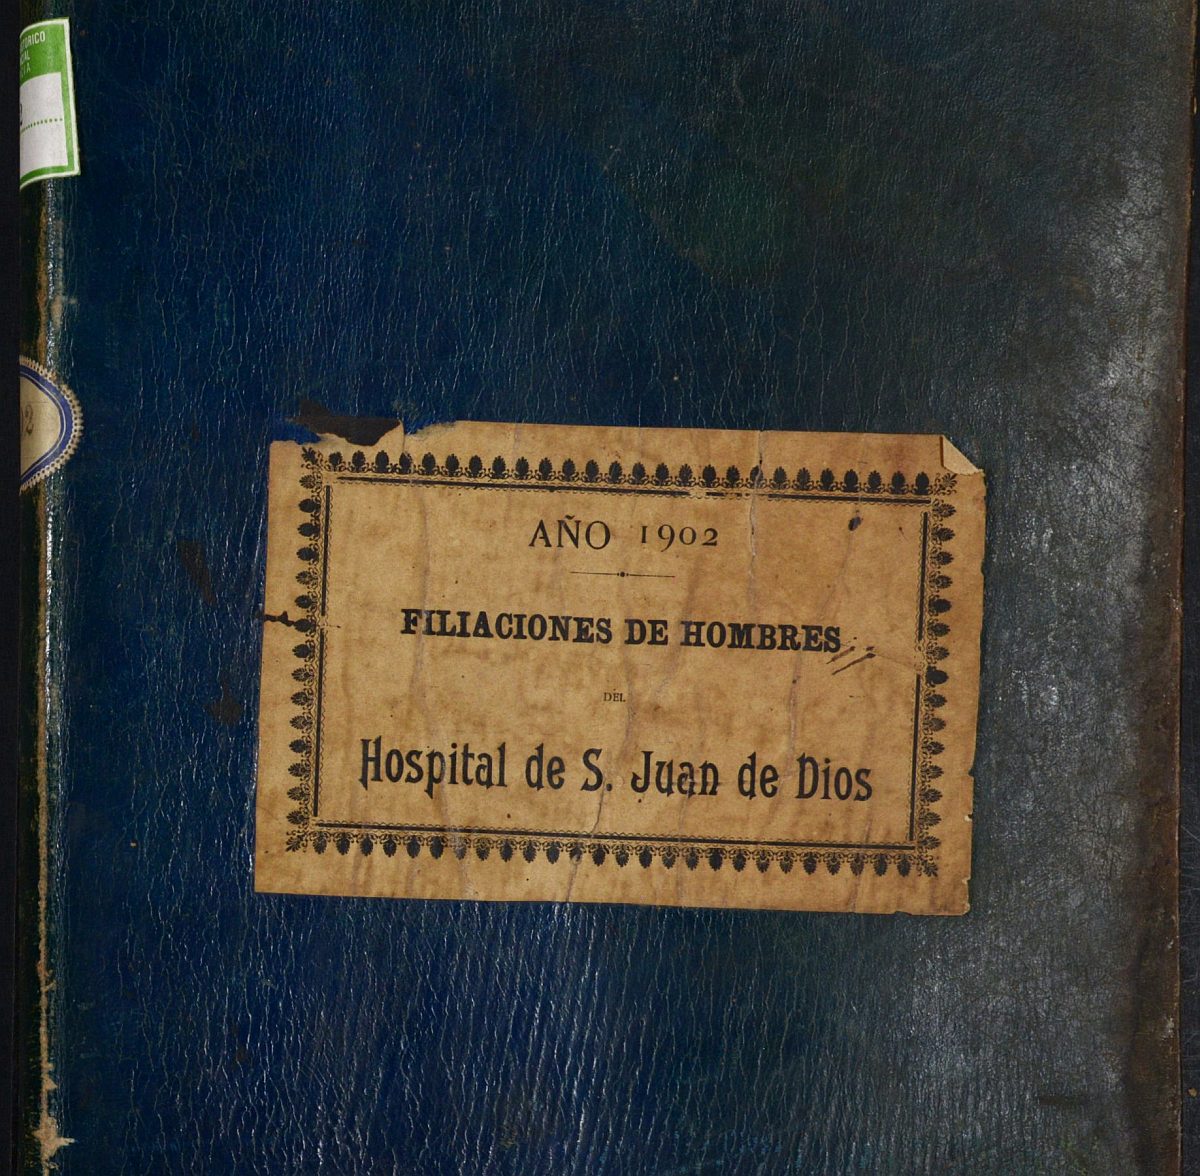 Registro de entrada y salida de enfermos del Hospital. (Hombres). Año 1902, enero-diciembre.